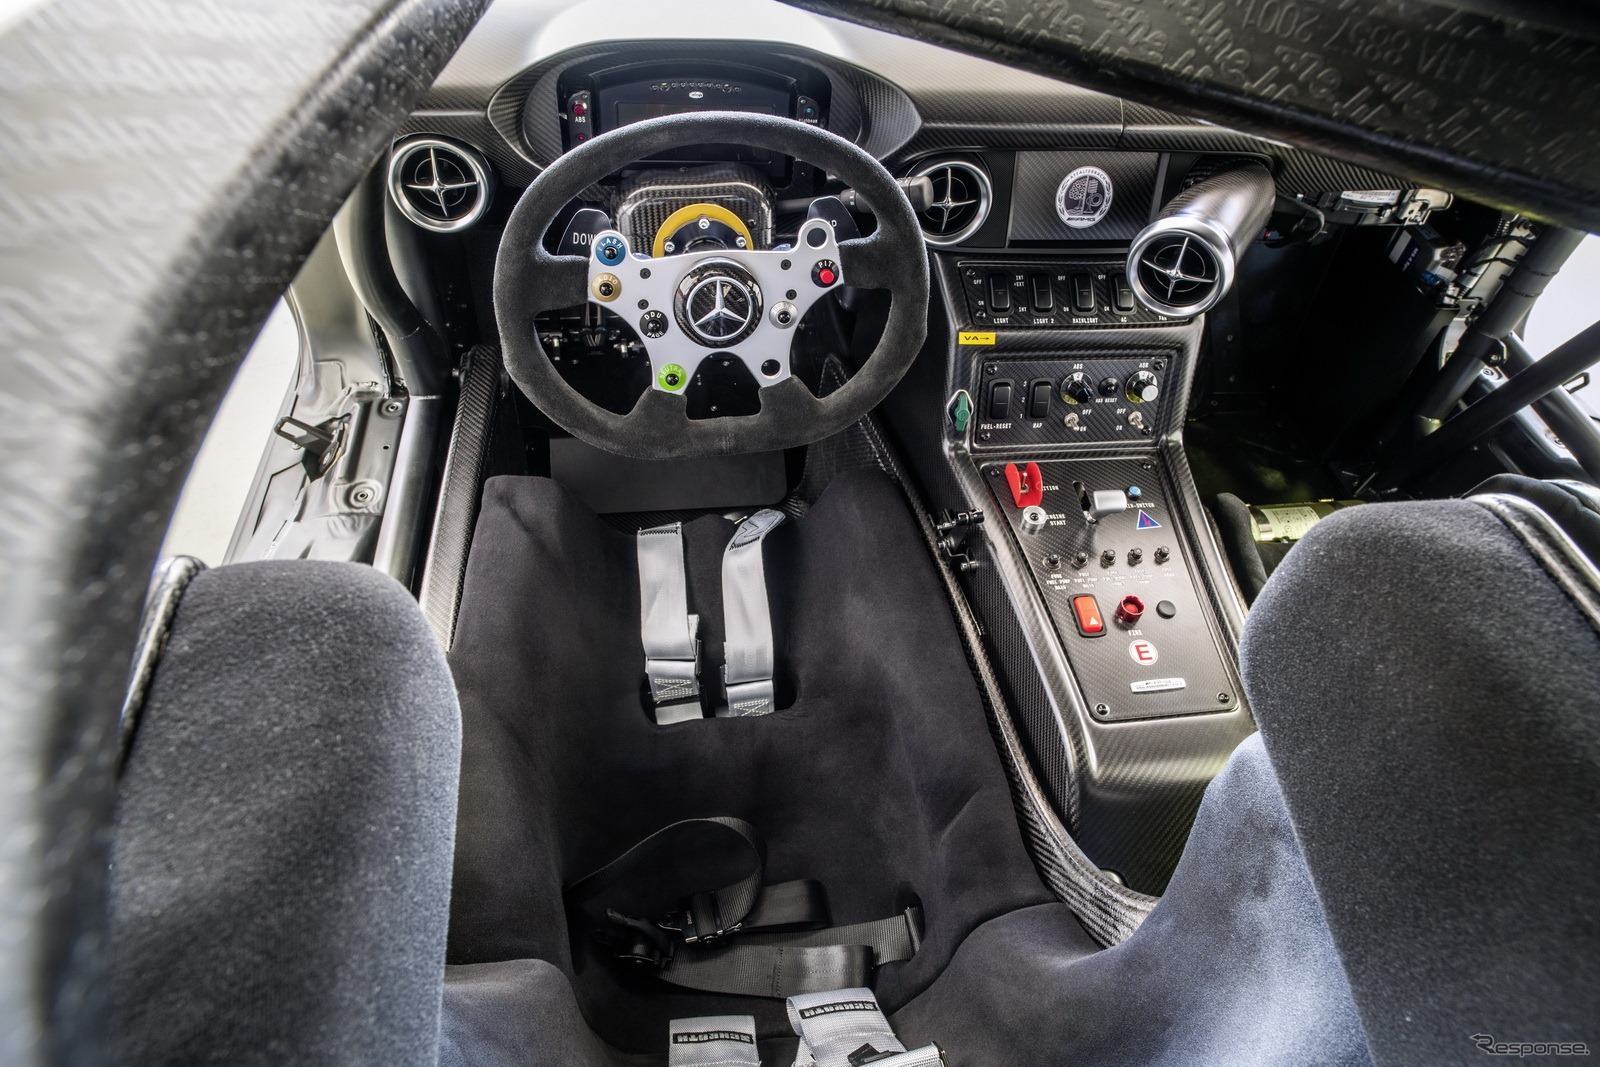 メルセデスベンツ SLS AMG GT3 45thアニバーサリー